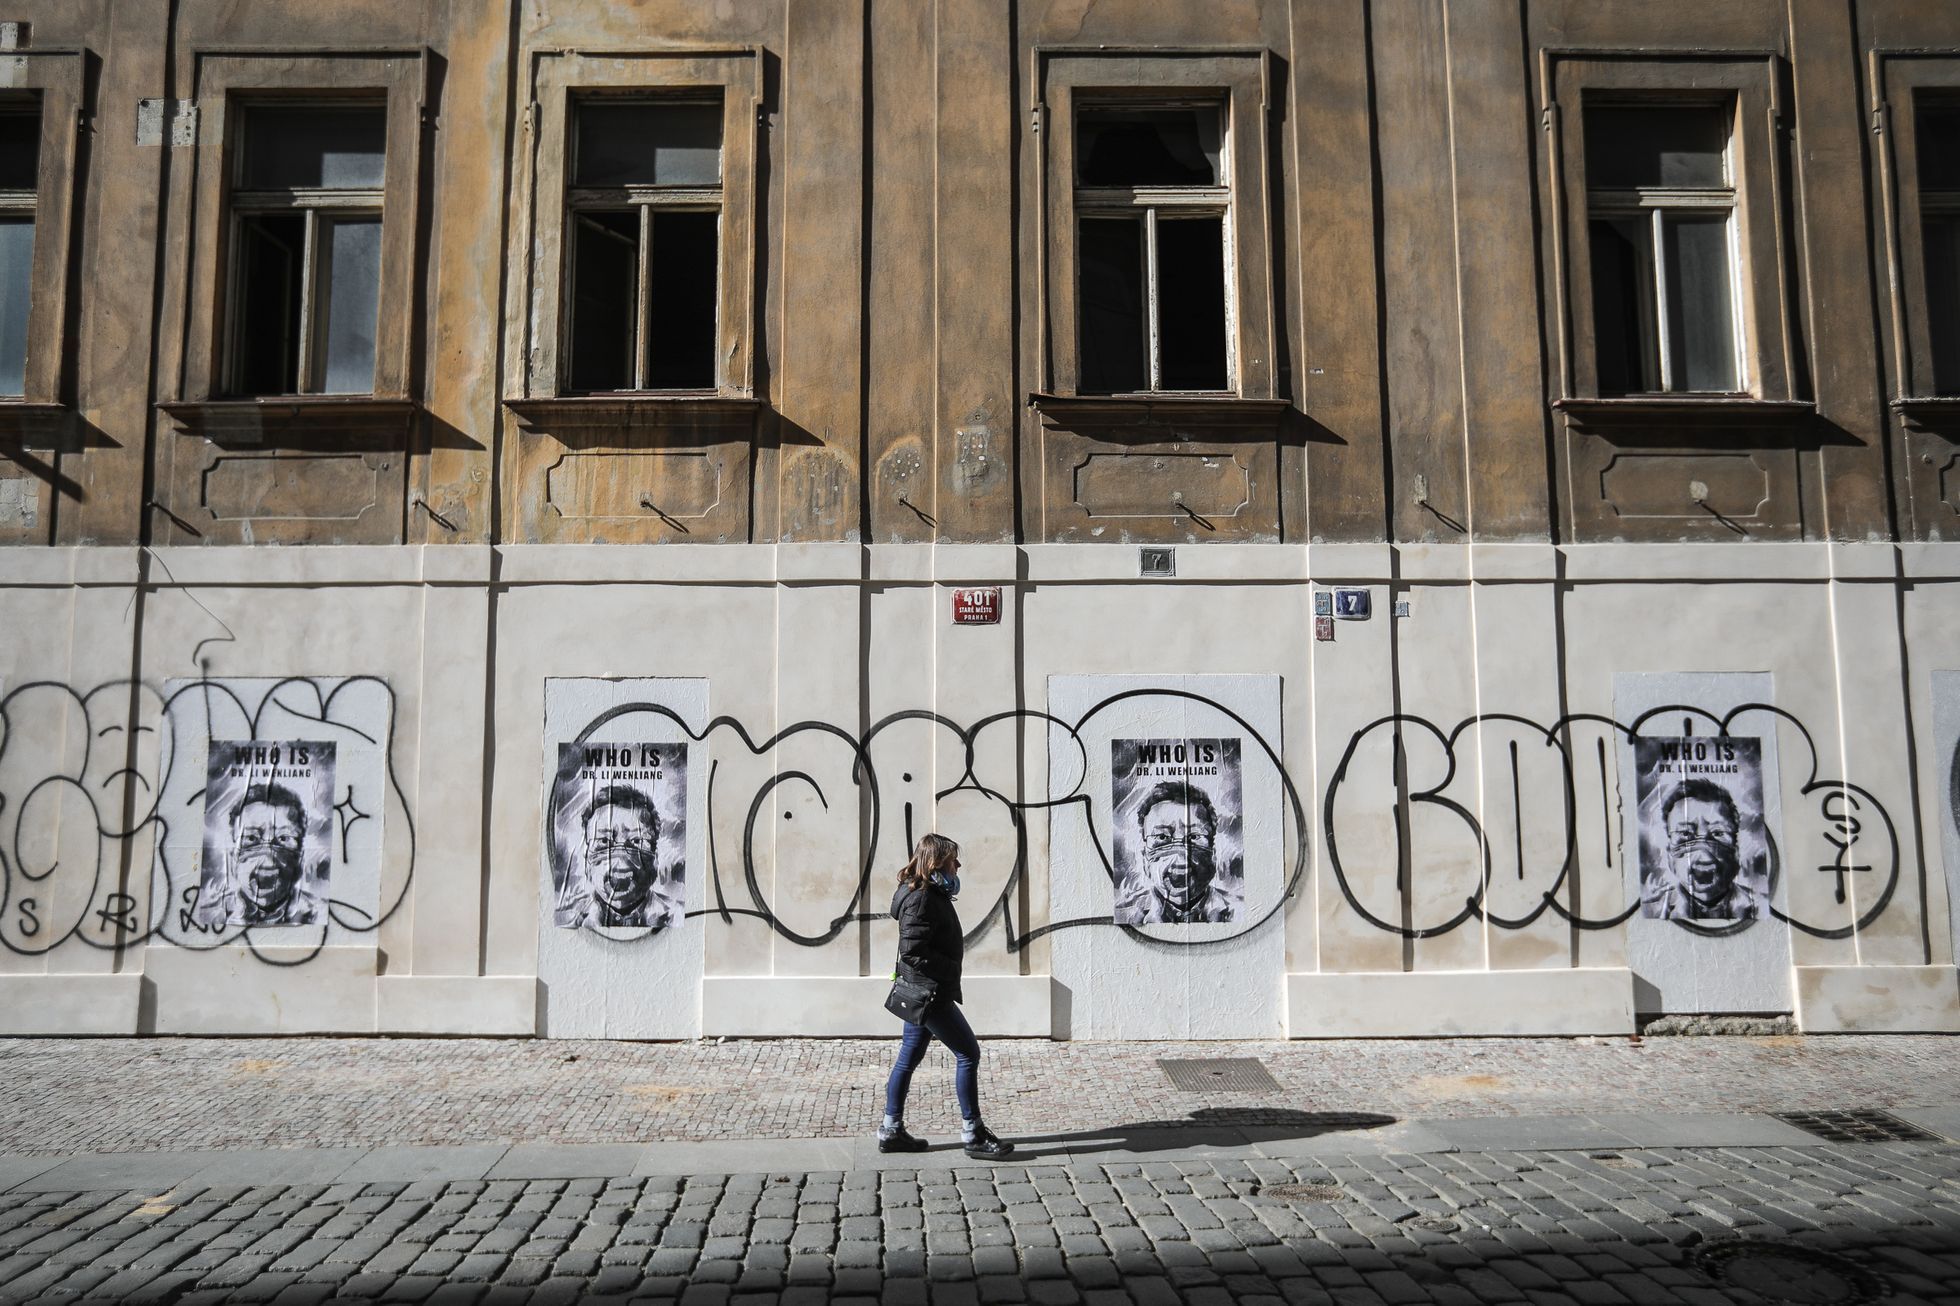 Čínský street art umělec Badiucao v Praze, výlep plakátů